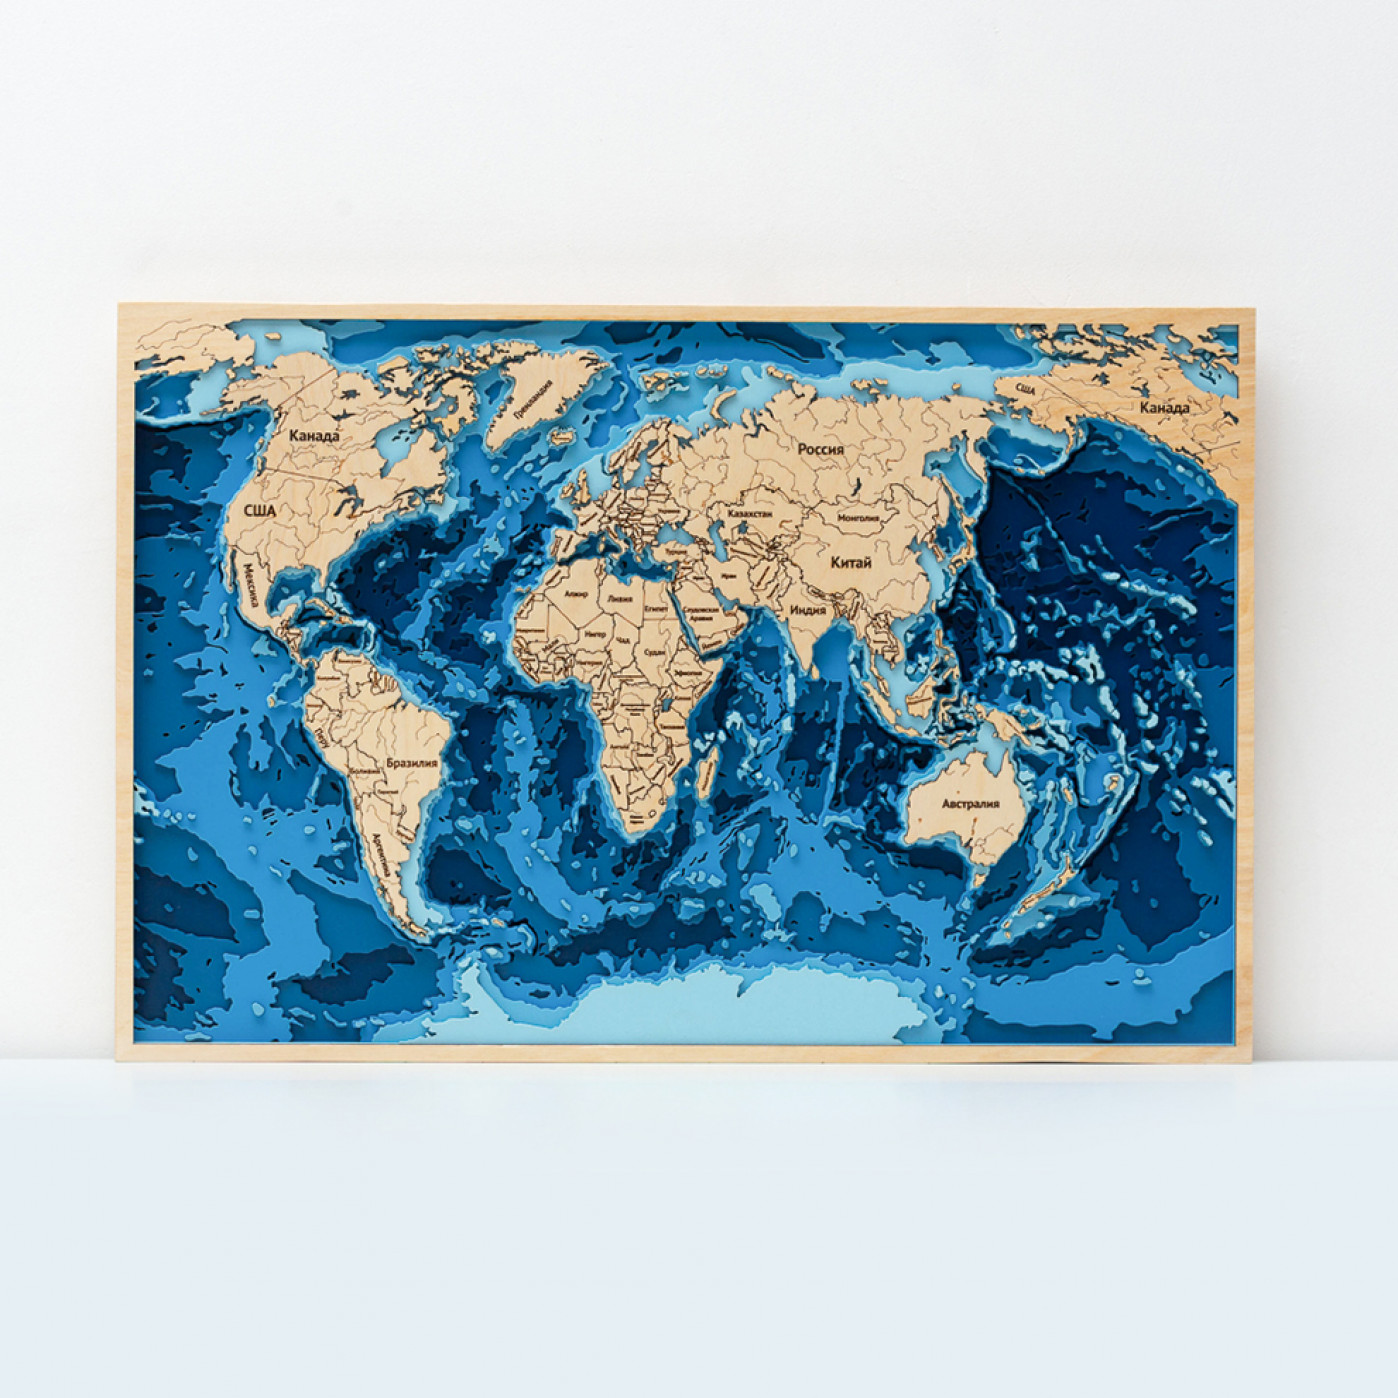 Объемная 3D карта мира 60 х 40 см. купить в интернет-магазине, подарки понизким ценам